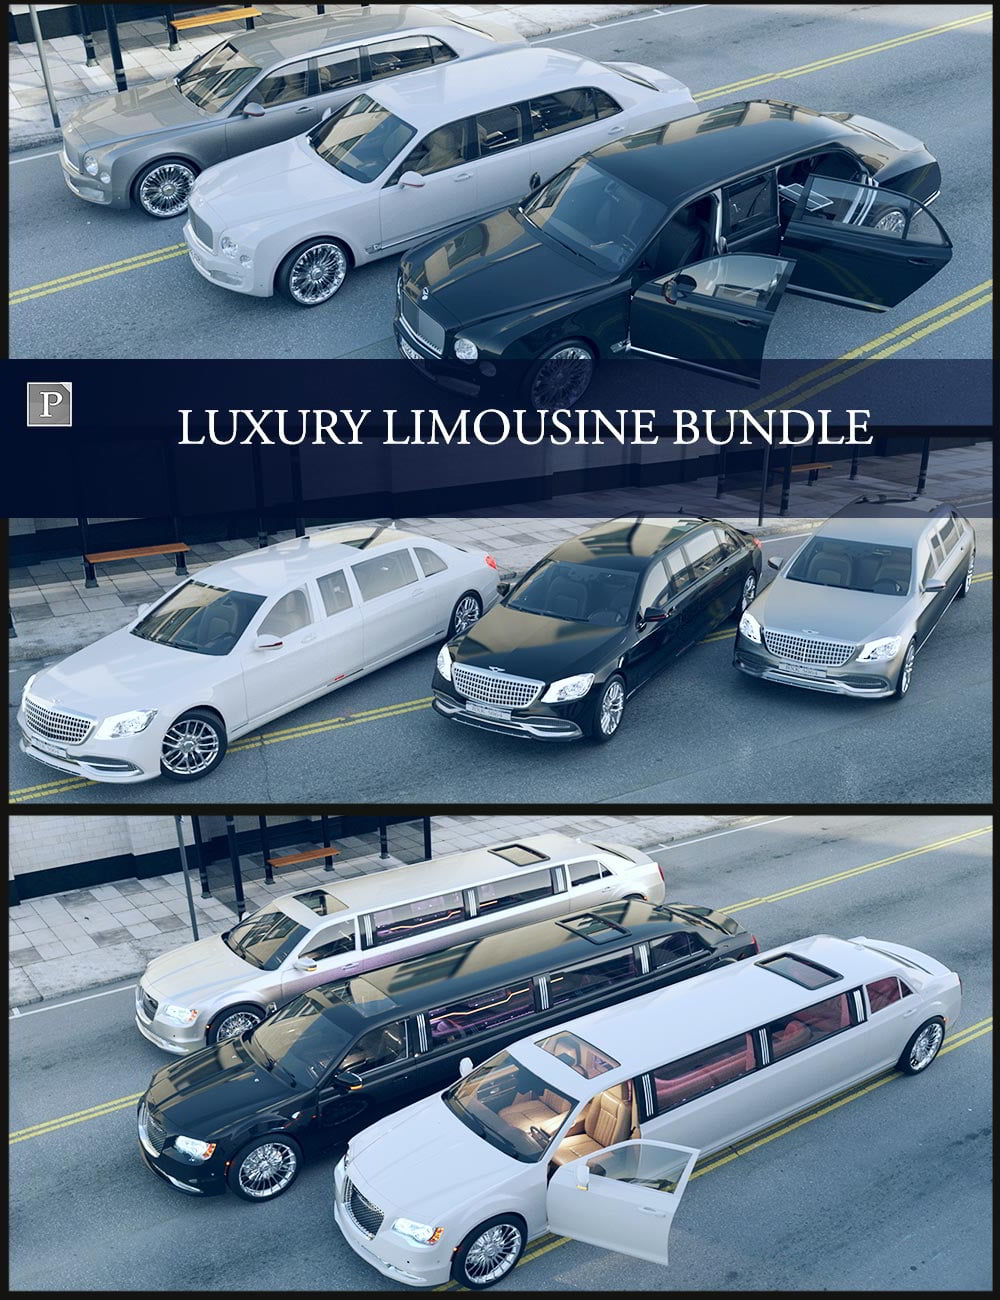 Daz3d – Luxury Limousine Bundle free download